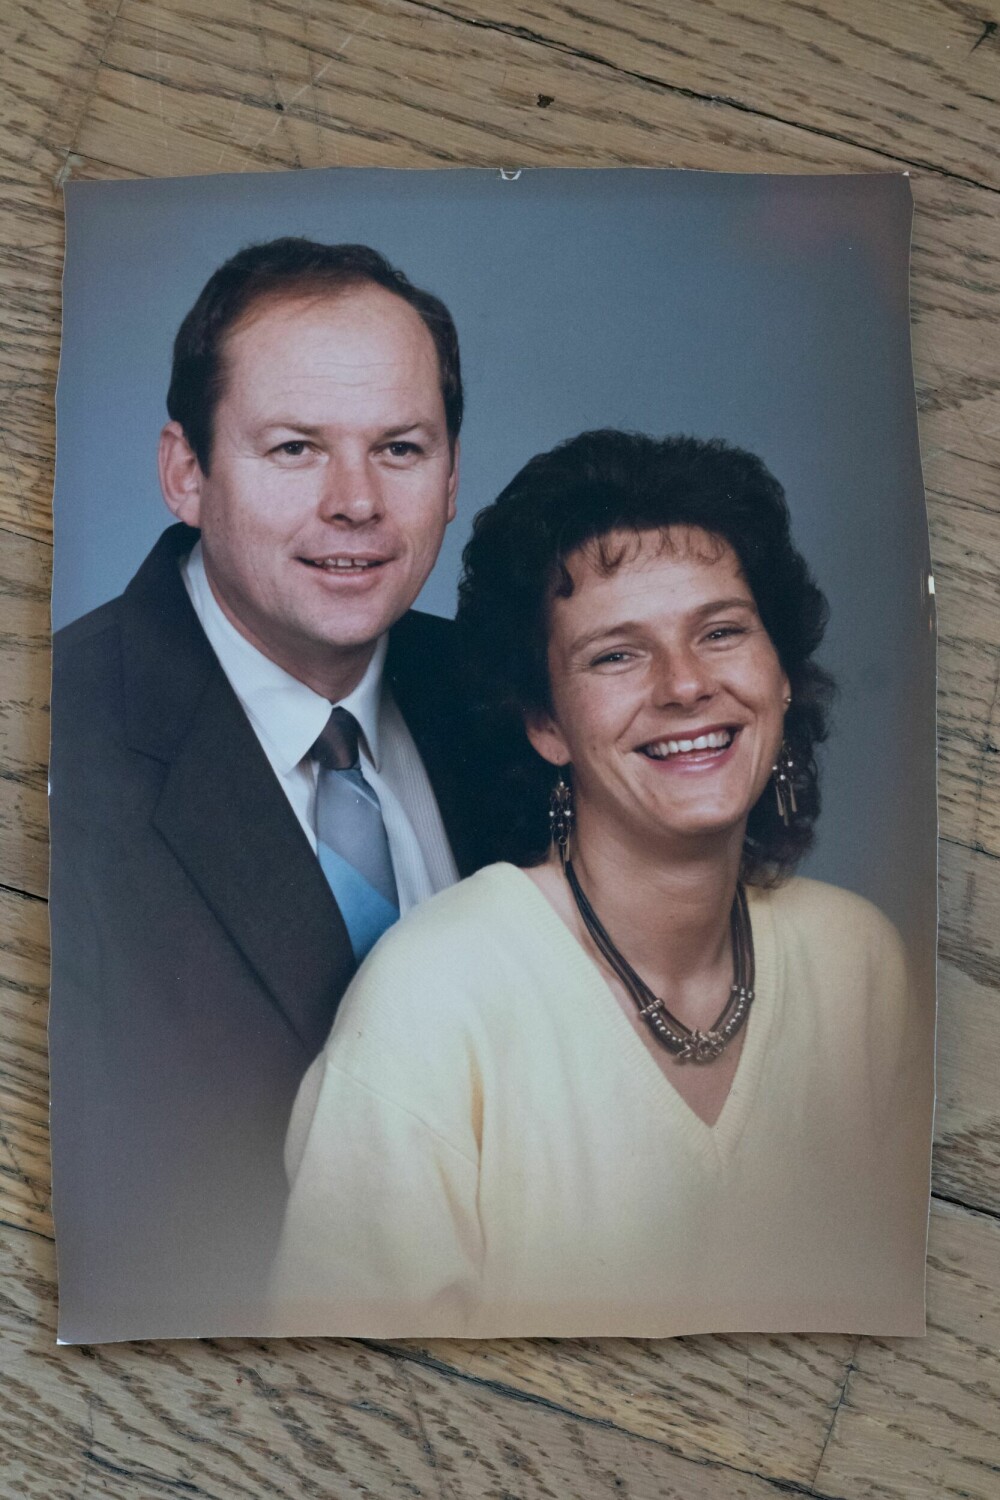 <b>HOS FOTOGRAFEN:</b> Da Tom fikk lillesøsteren på besøk første gang i 1988, tok han henne med til fotografen.